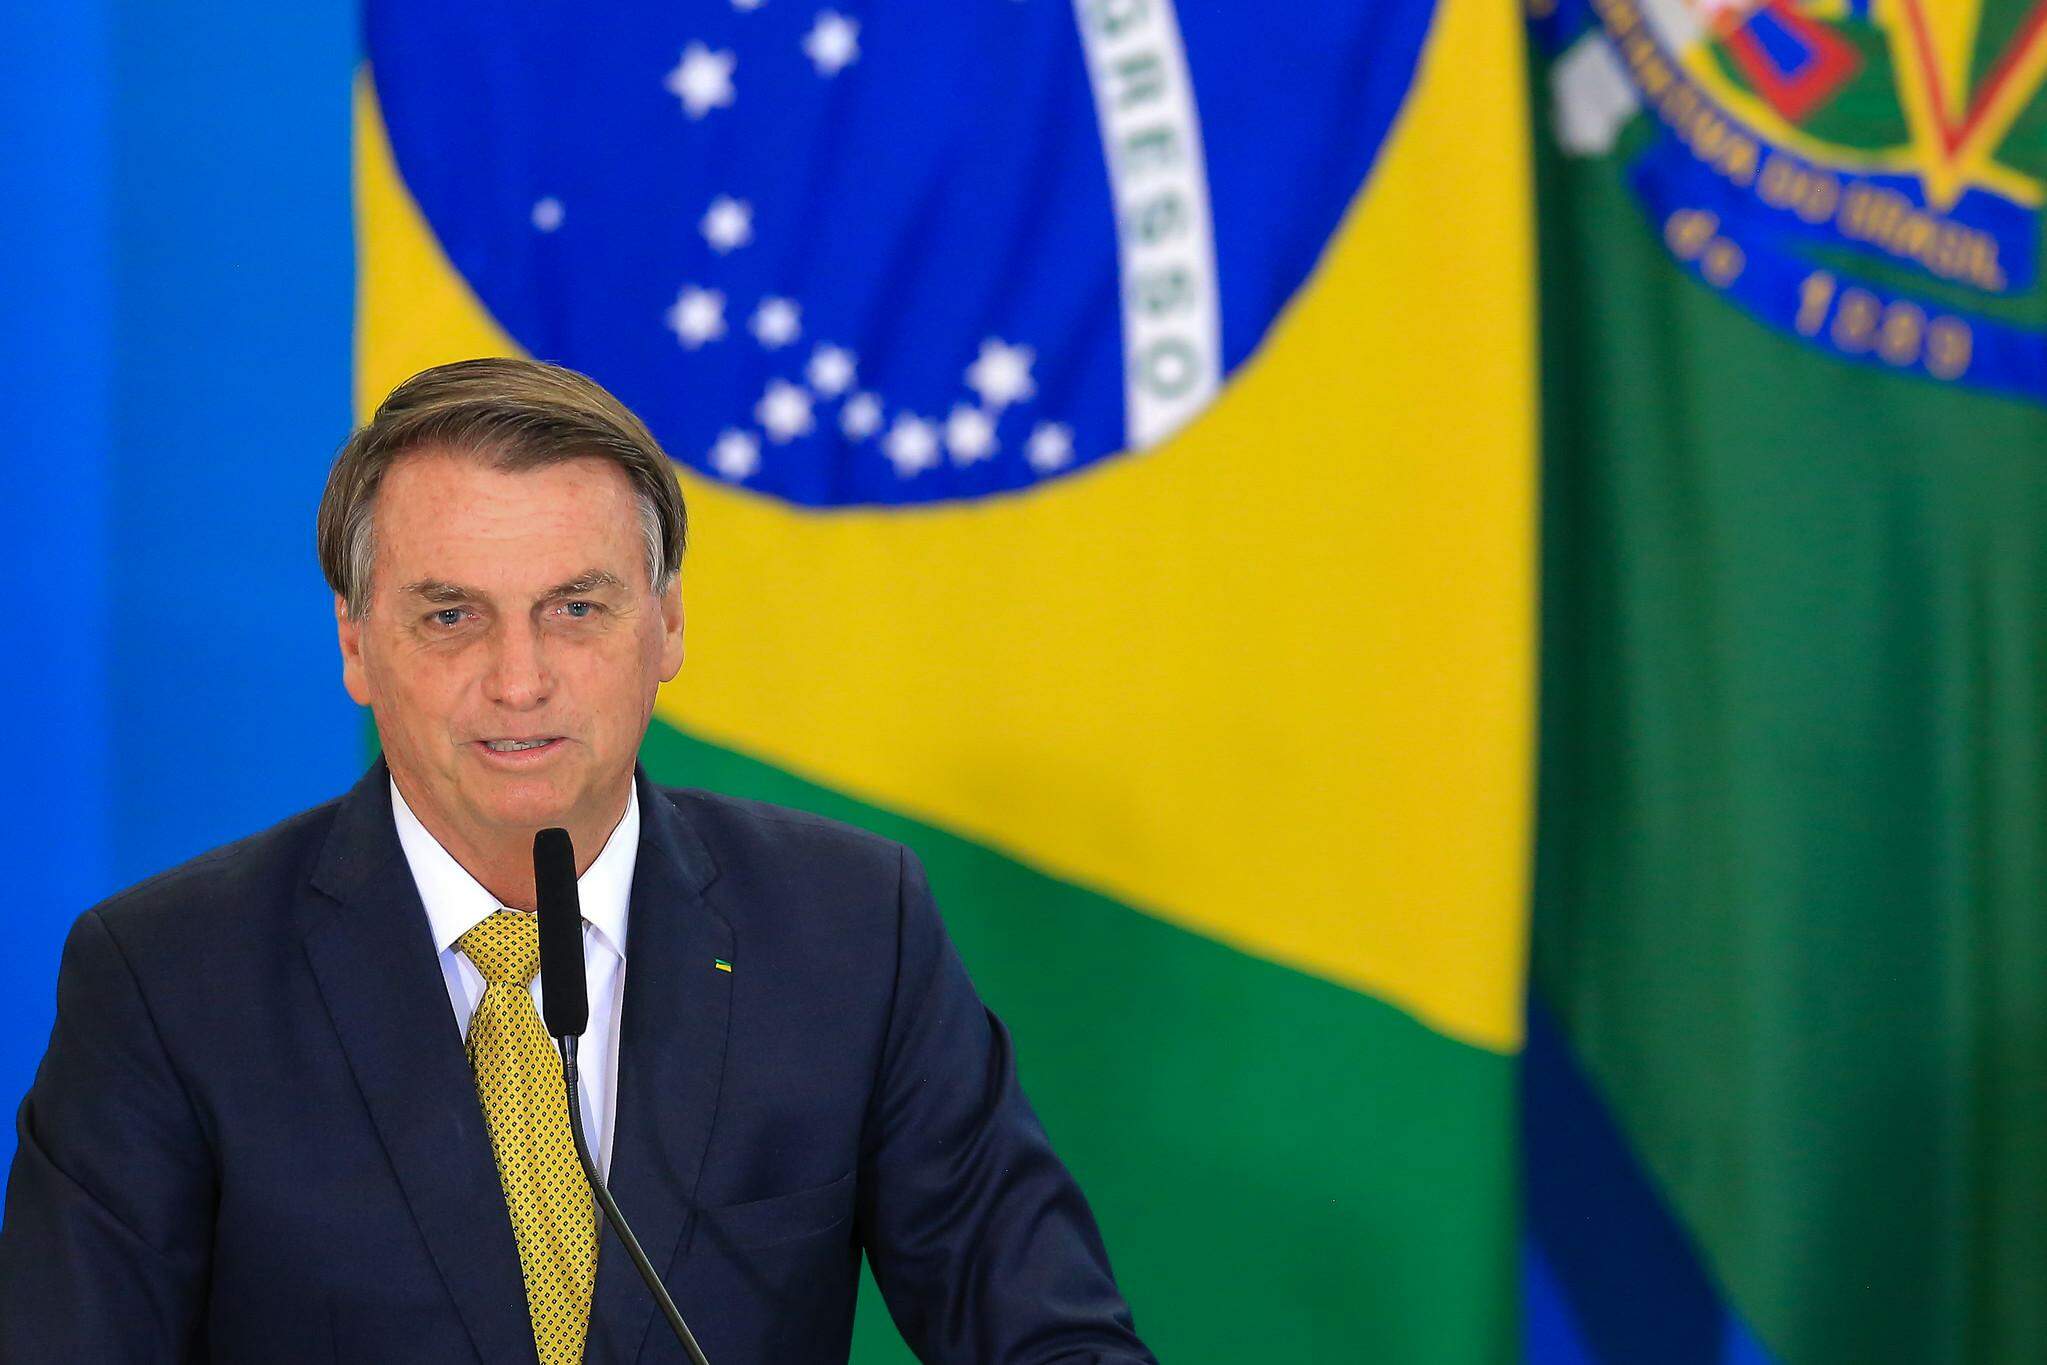 Bolsonaro duvidava de guerra na Ucrânia ao viajar para a Rússia